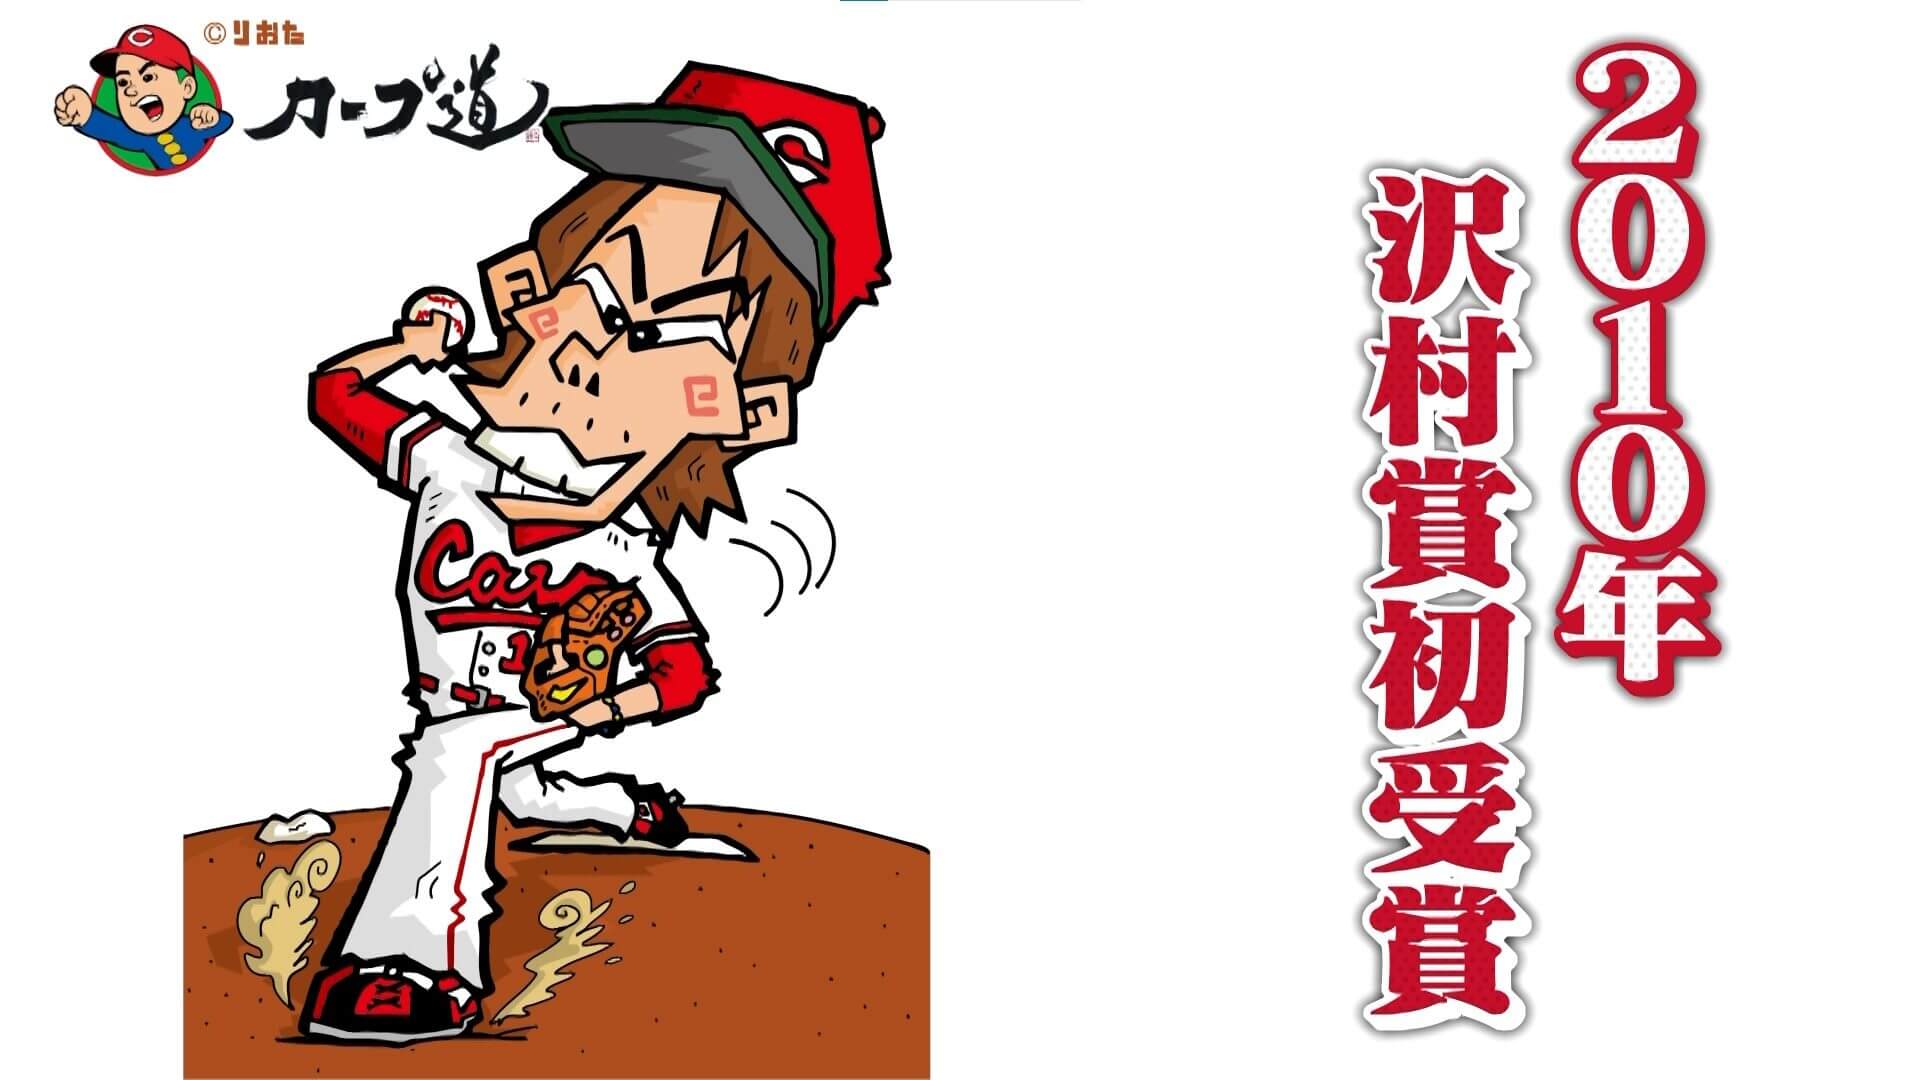 2010年沢村賞初受賞した前田健太投手を描いたイラスト